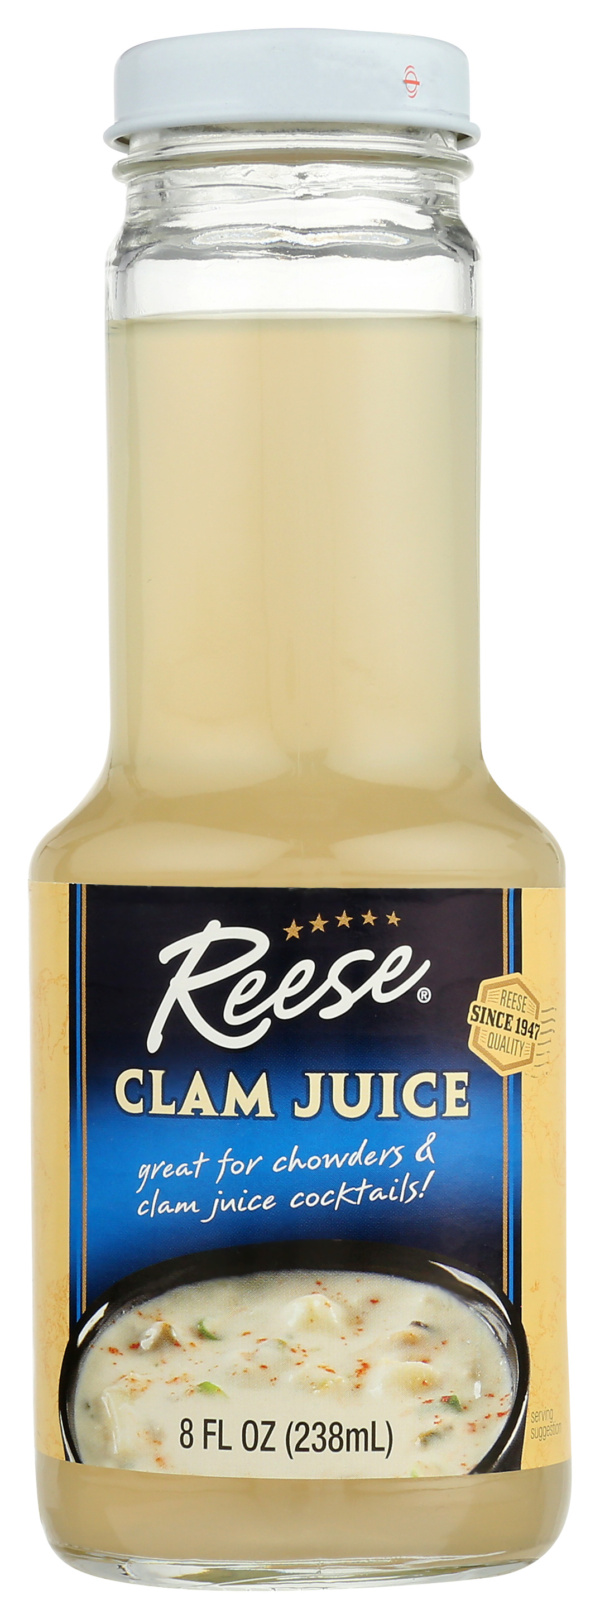 Clam Juice